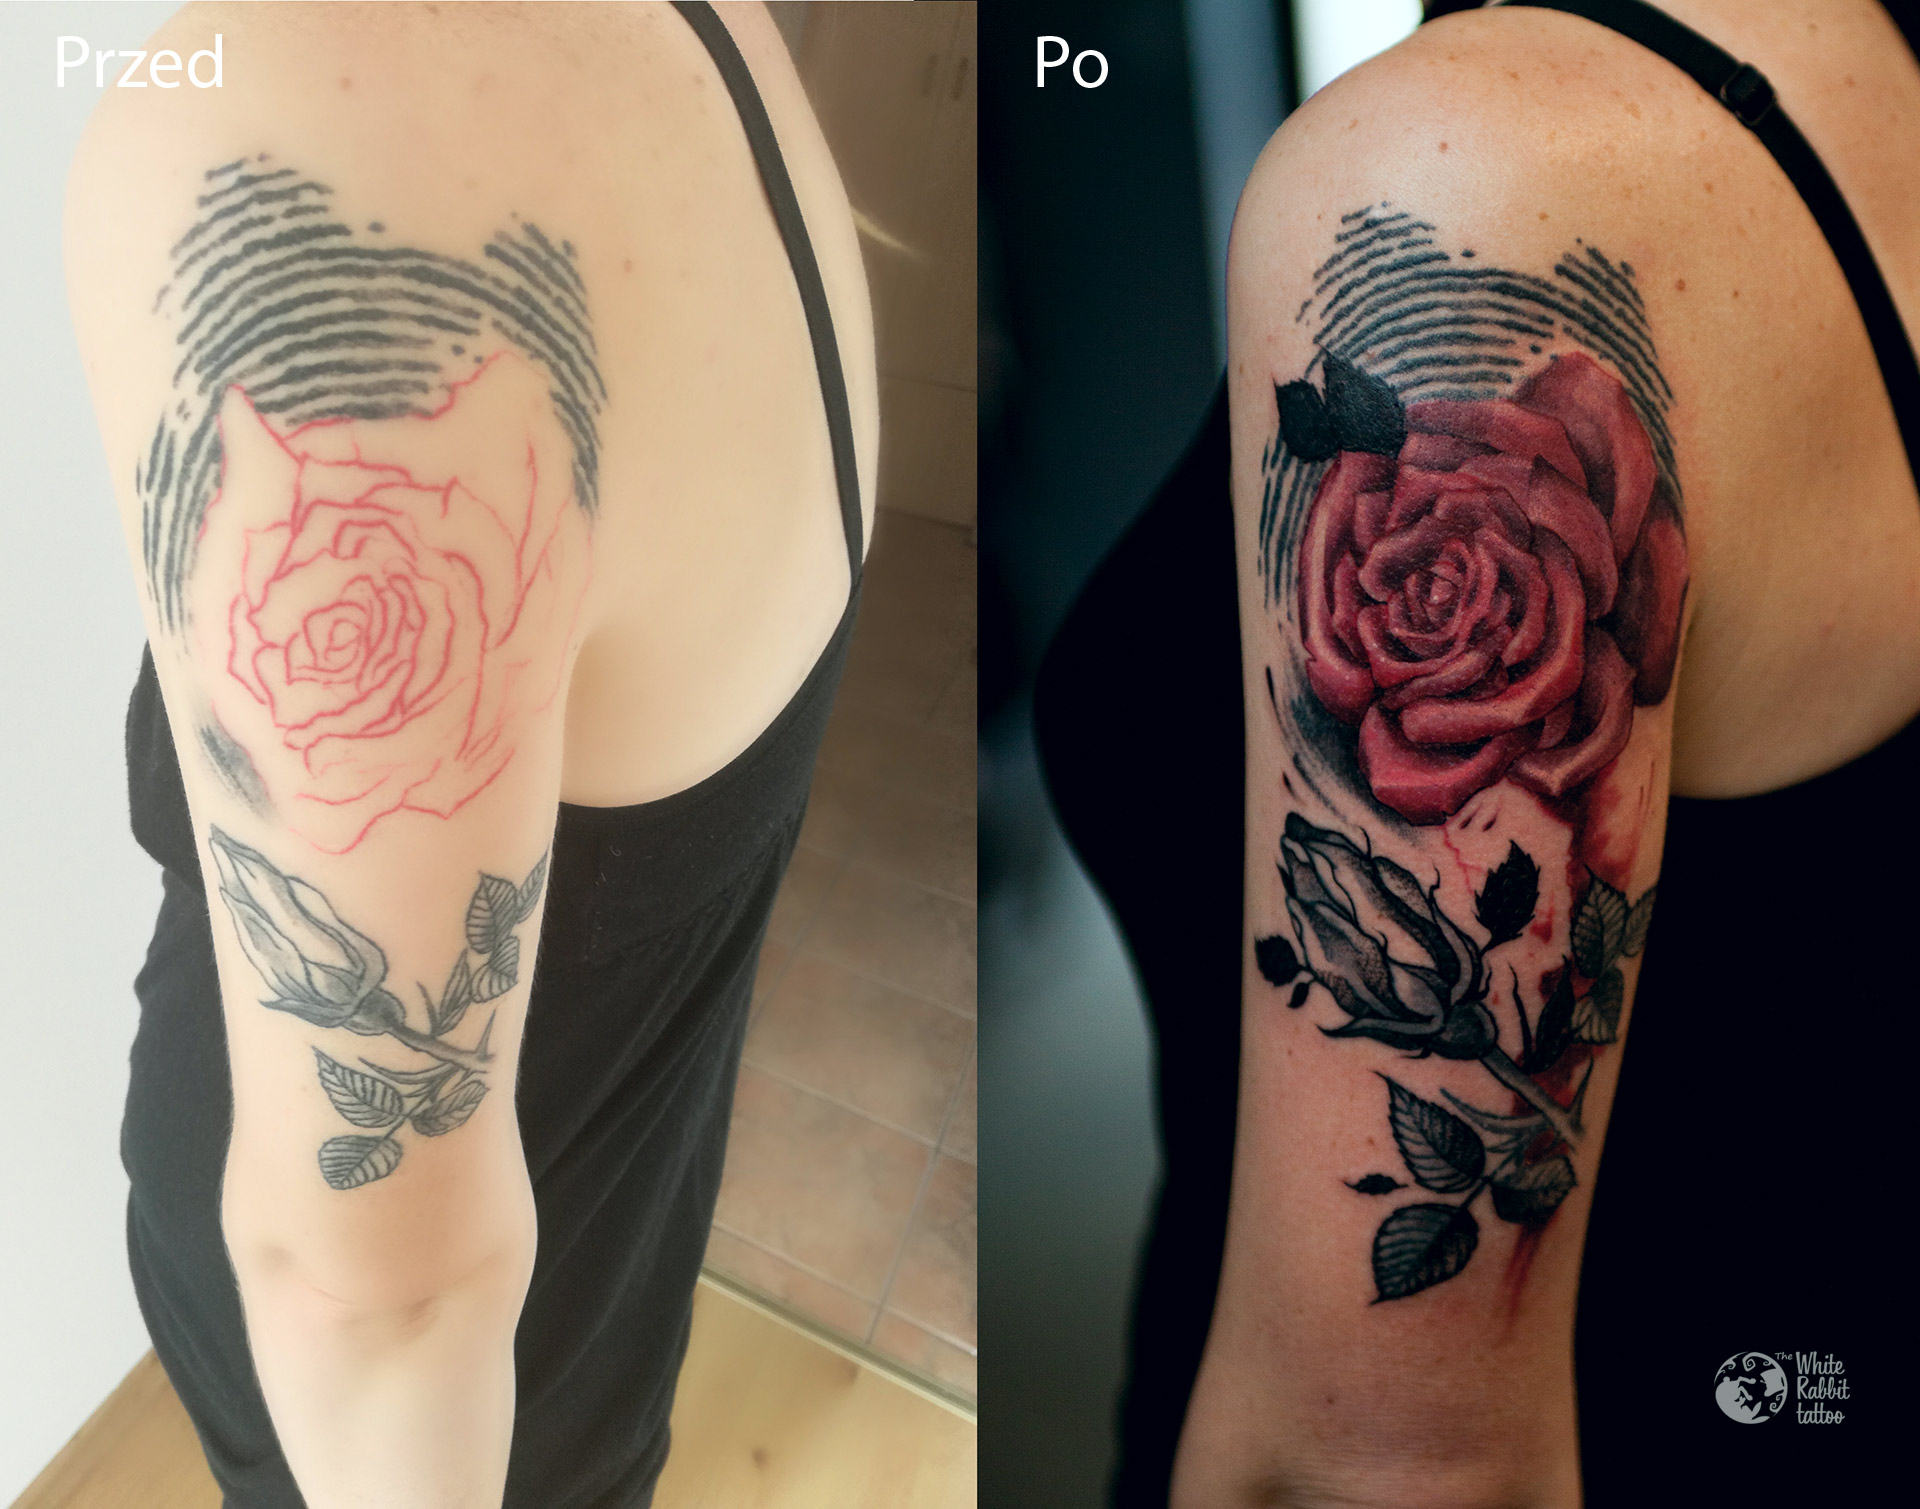 Poprawa tatuażu róża